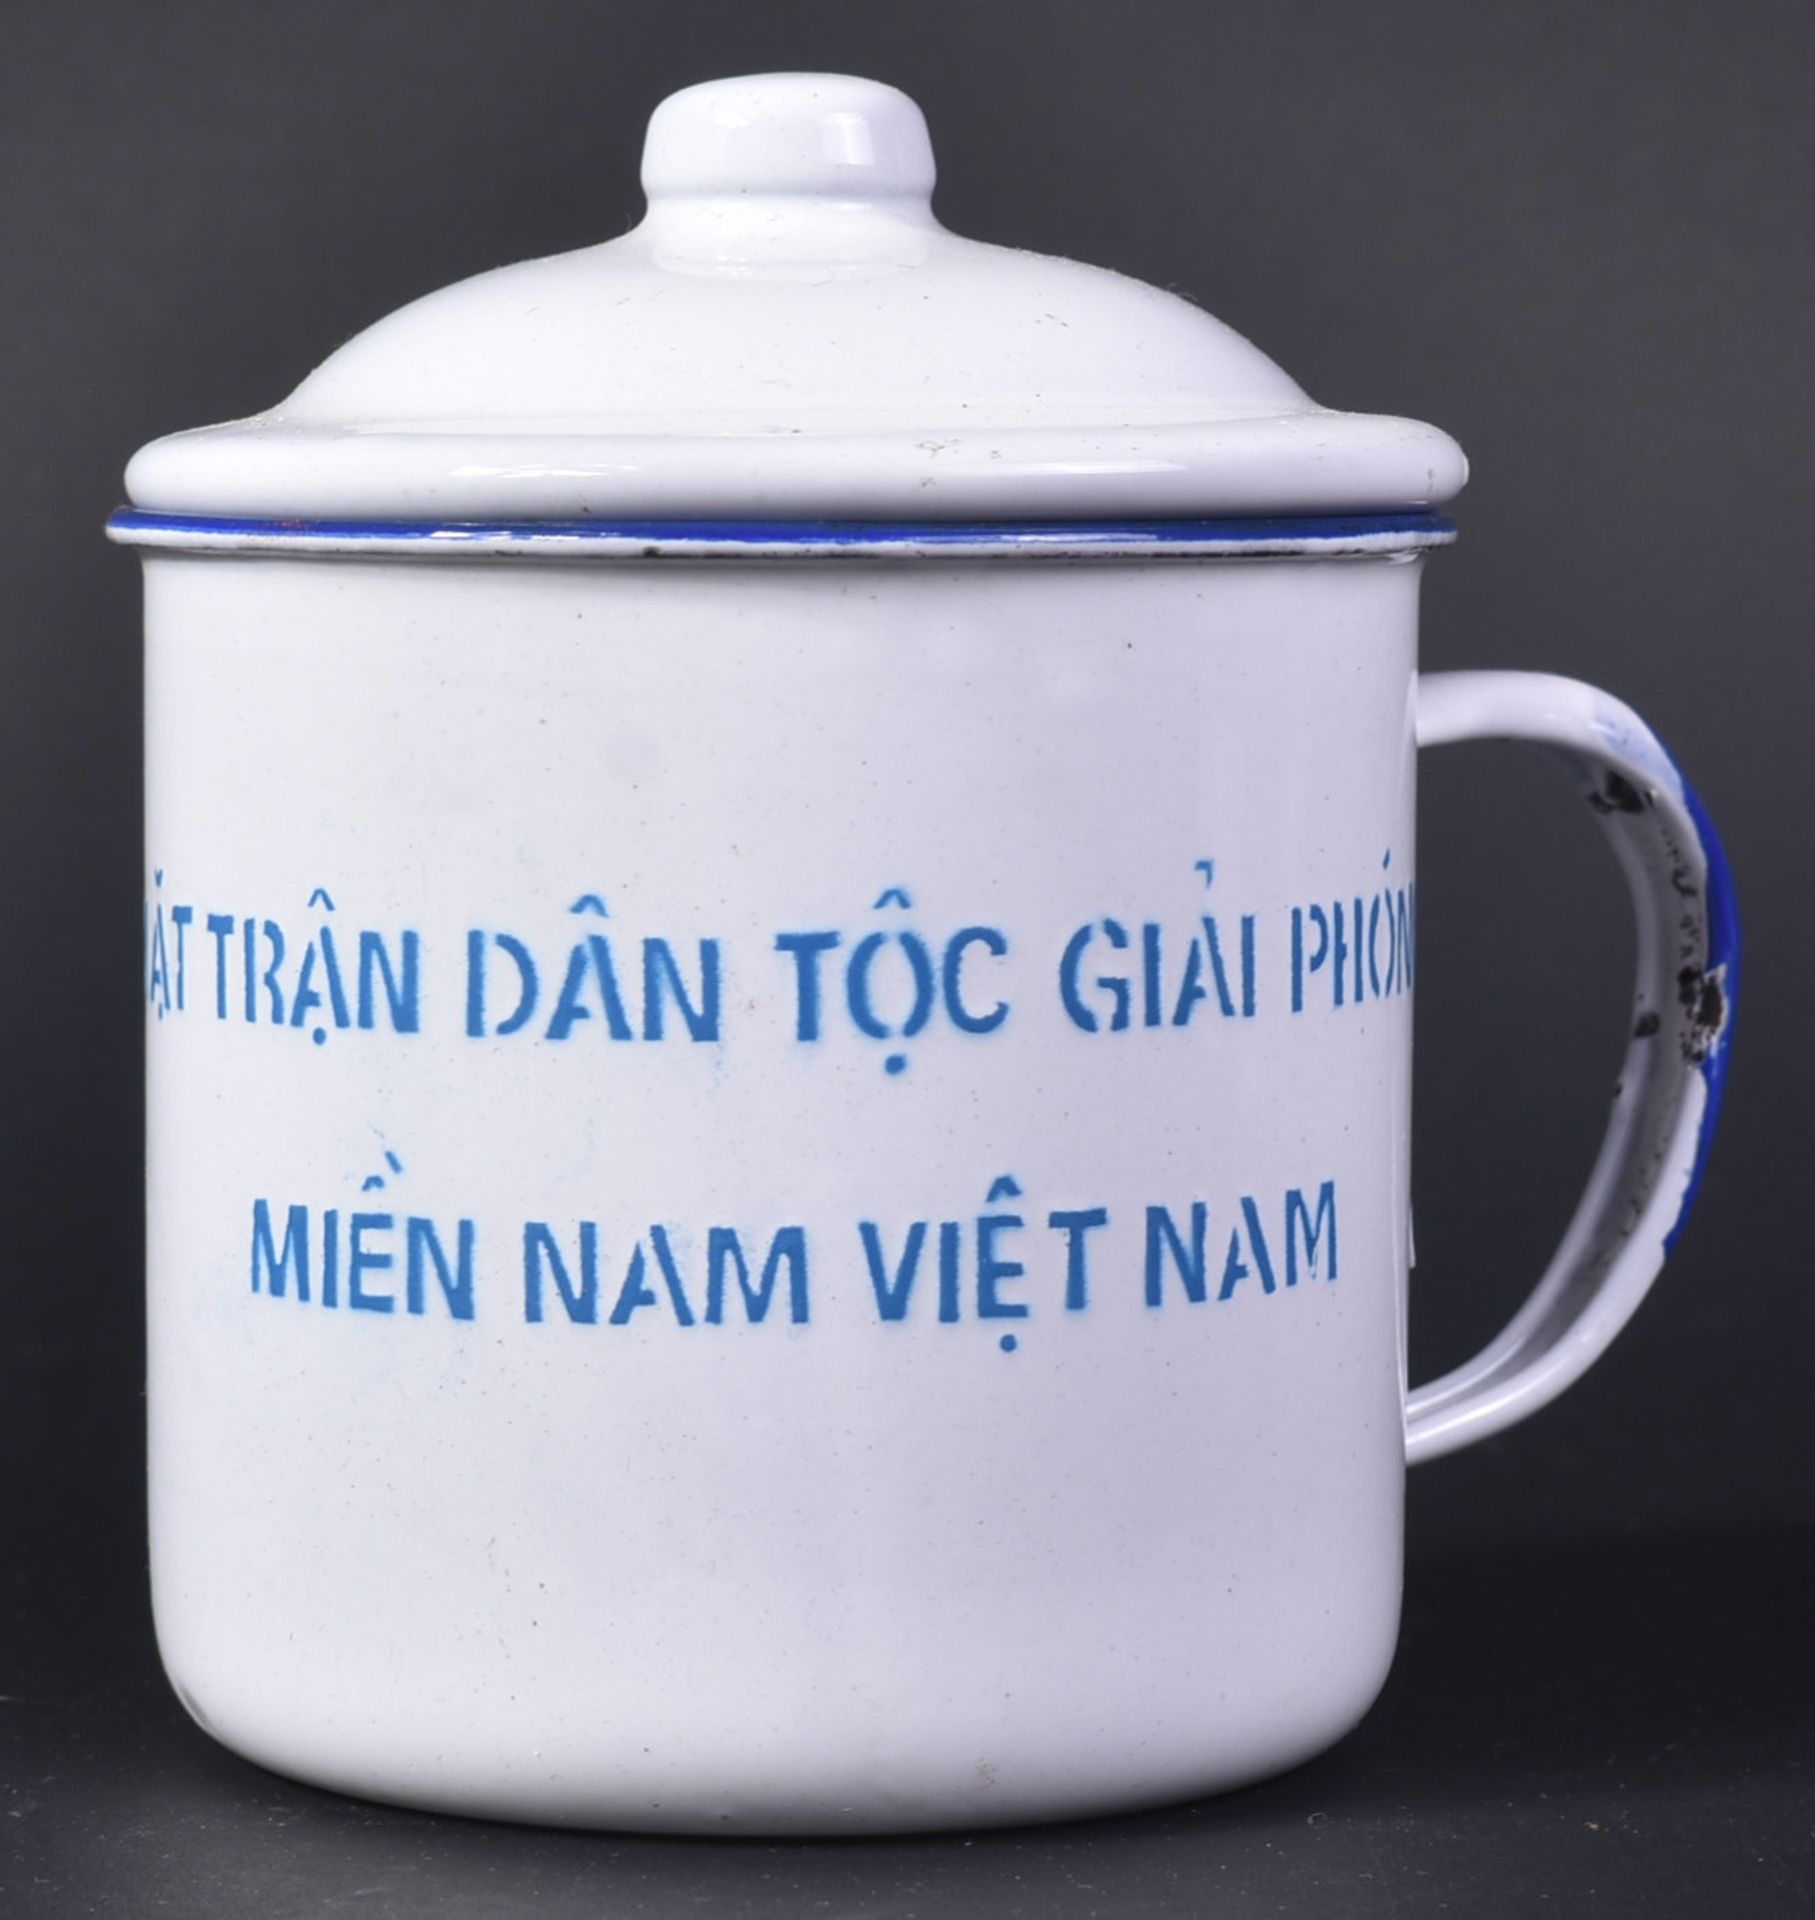 VIETNAM WAR ERA VIET CONG RICE CUP